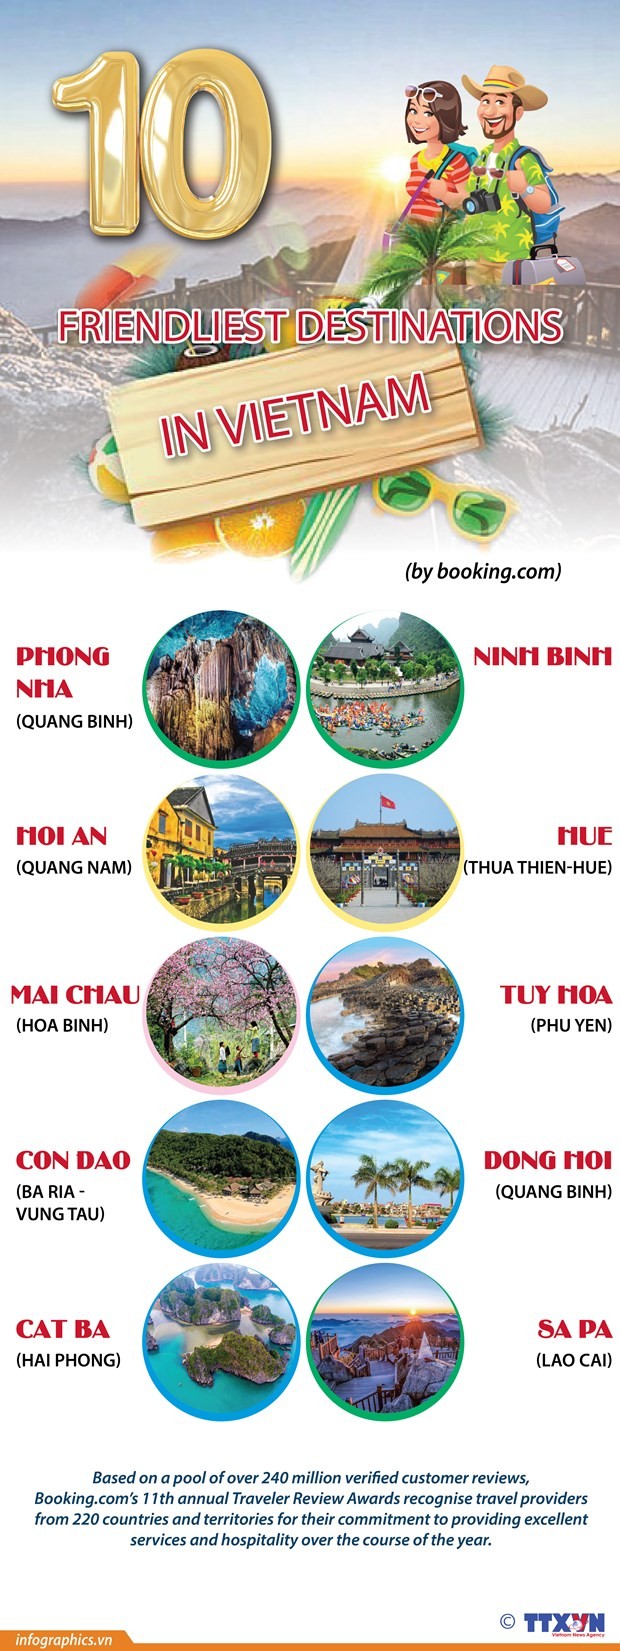 Booking.com names Vietnam’s top 10 friendliest destinations